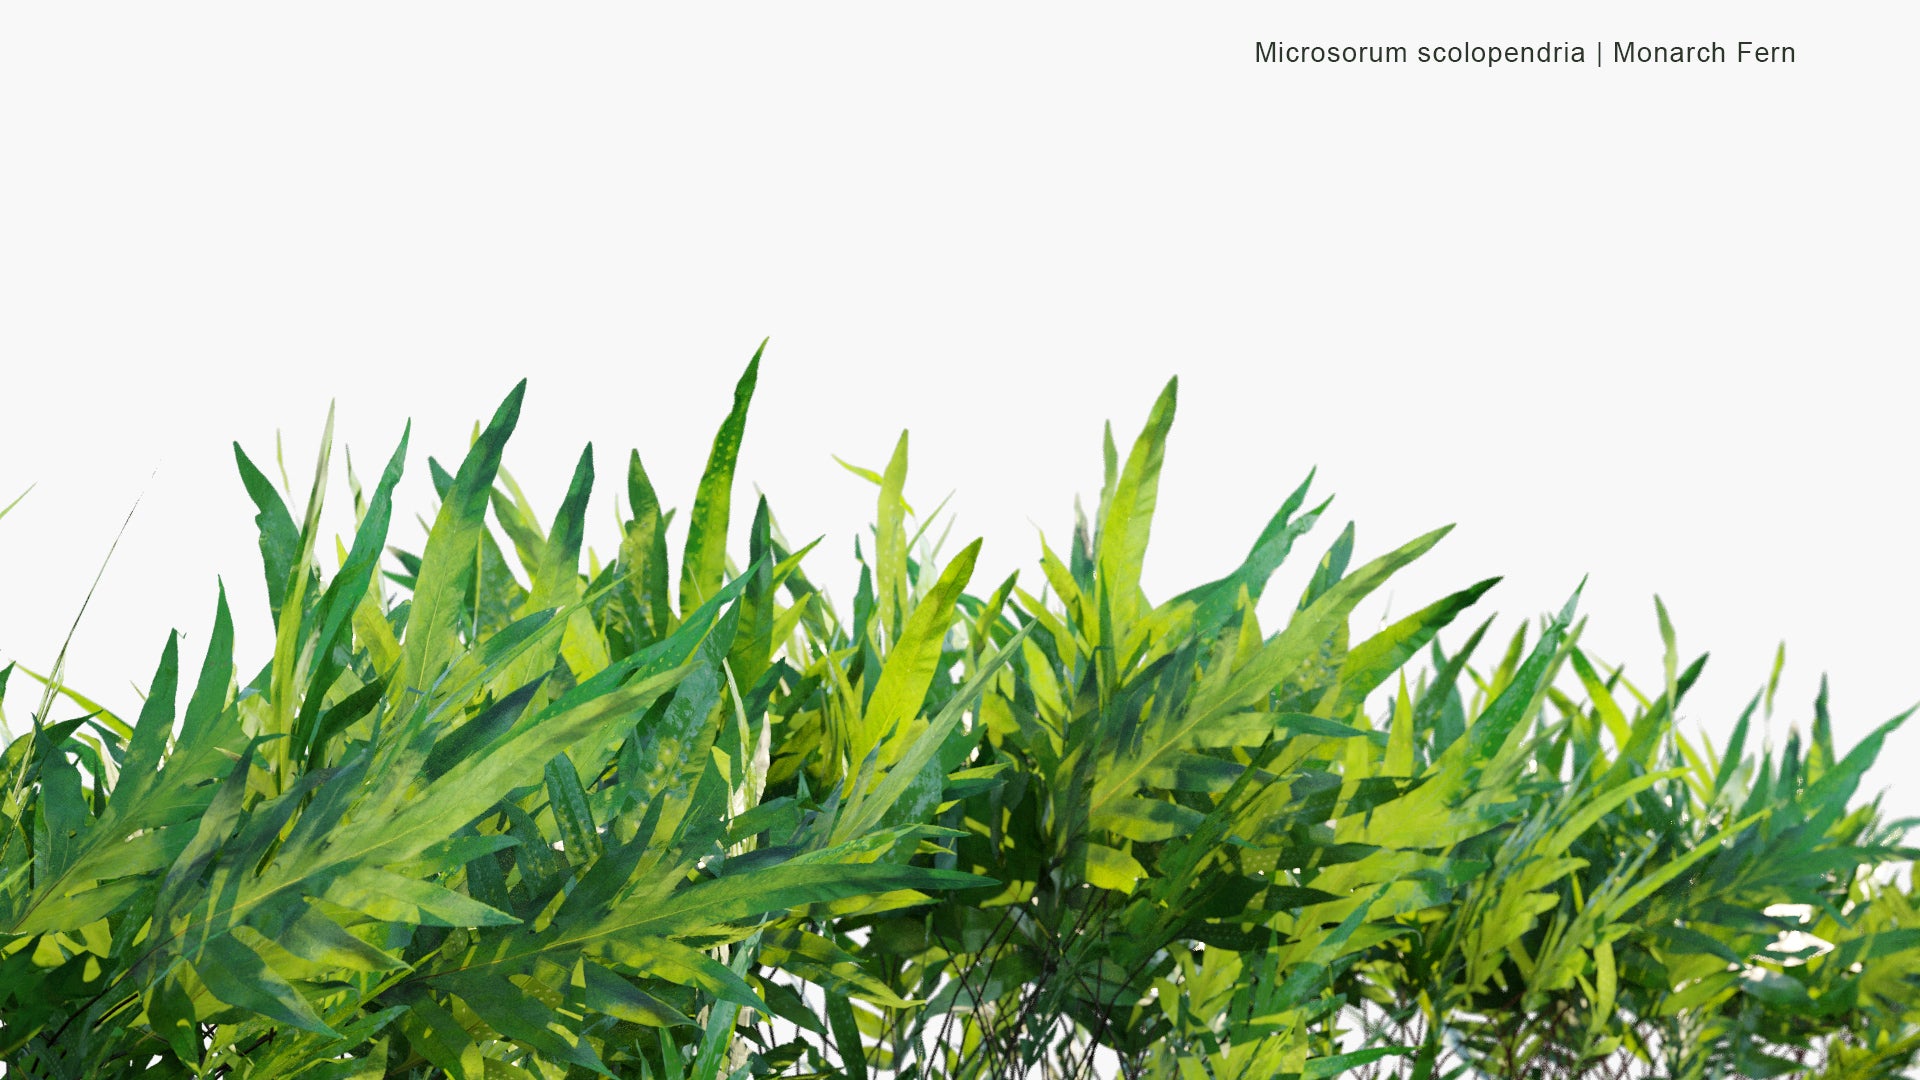 Low Poly Microsorum Scolopendria - Monarch Fern, Musk Fern, Maile-Scented Fern, Breadfruit Fern, Wart Fern (3D Model)